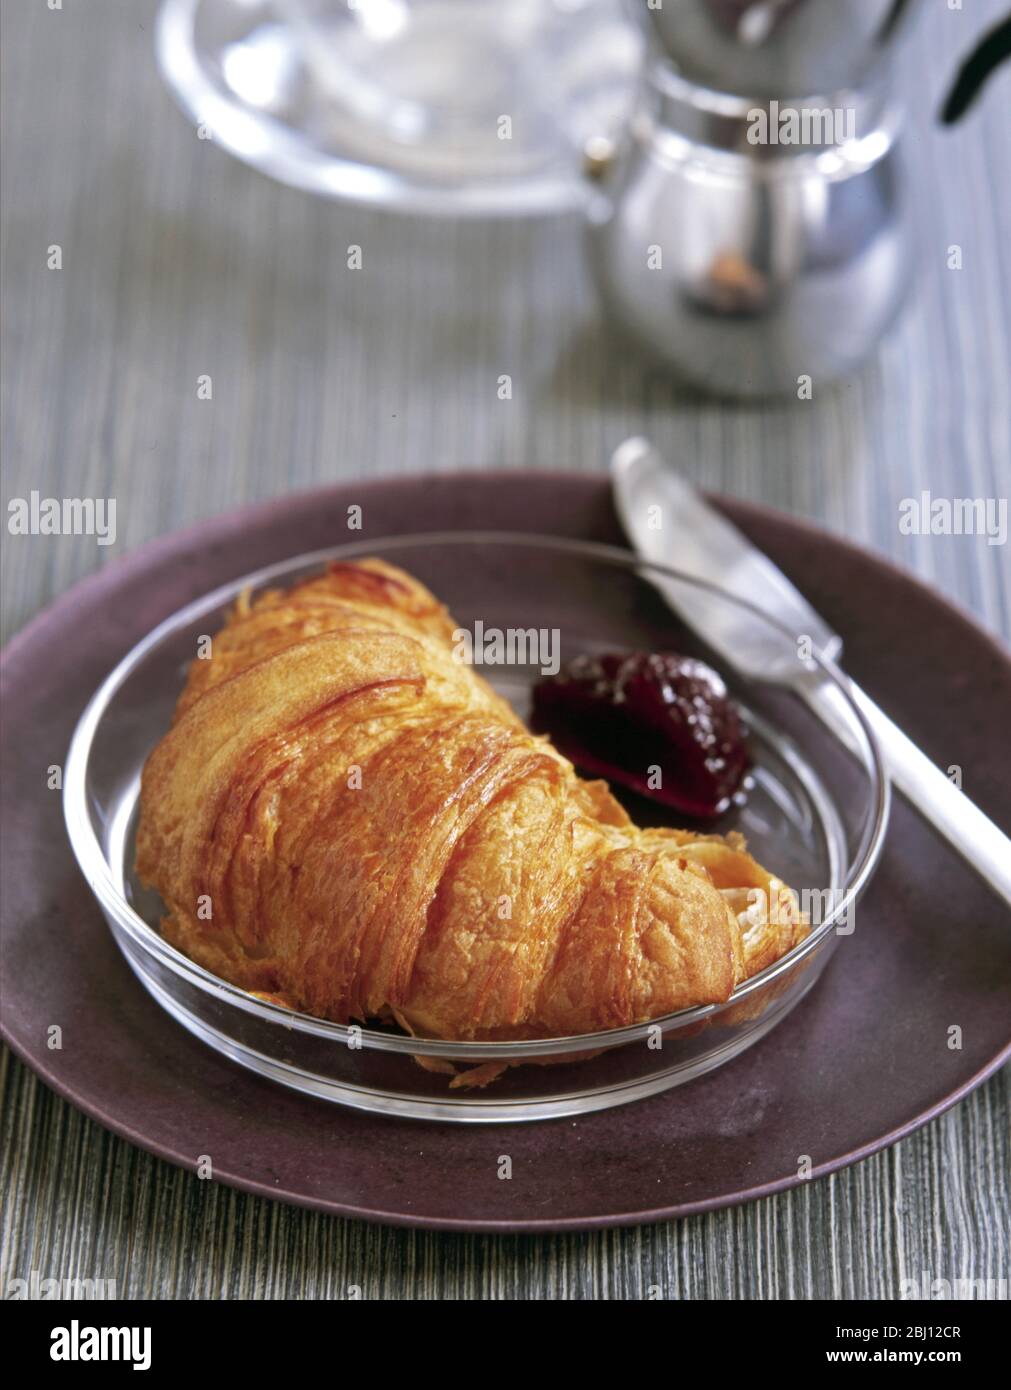 Croissant auf Glasteller mit Kirschmarmelade - Stockfoto